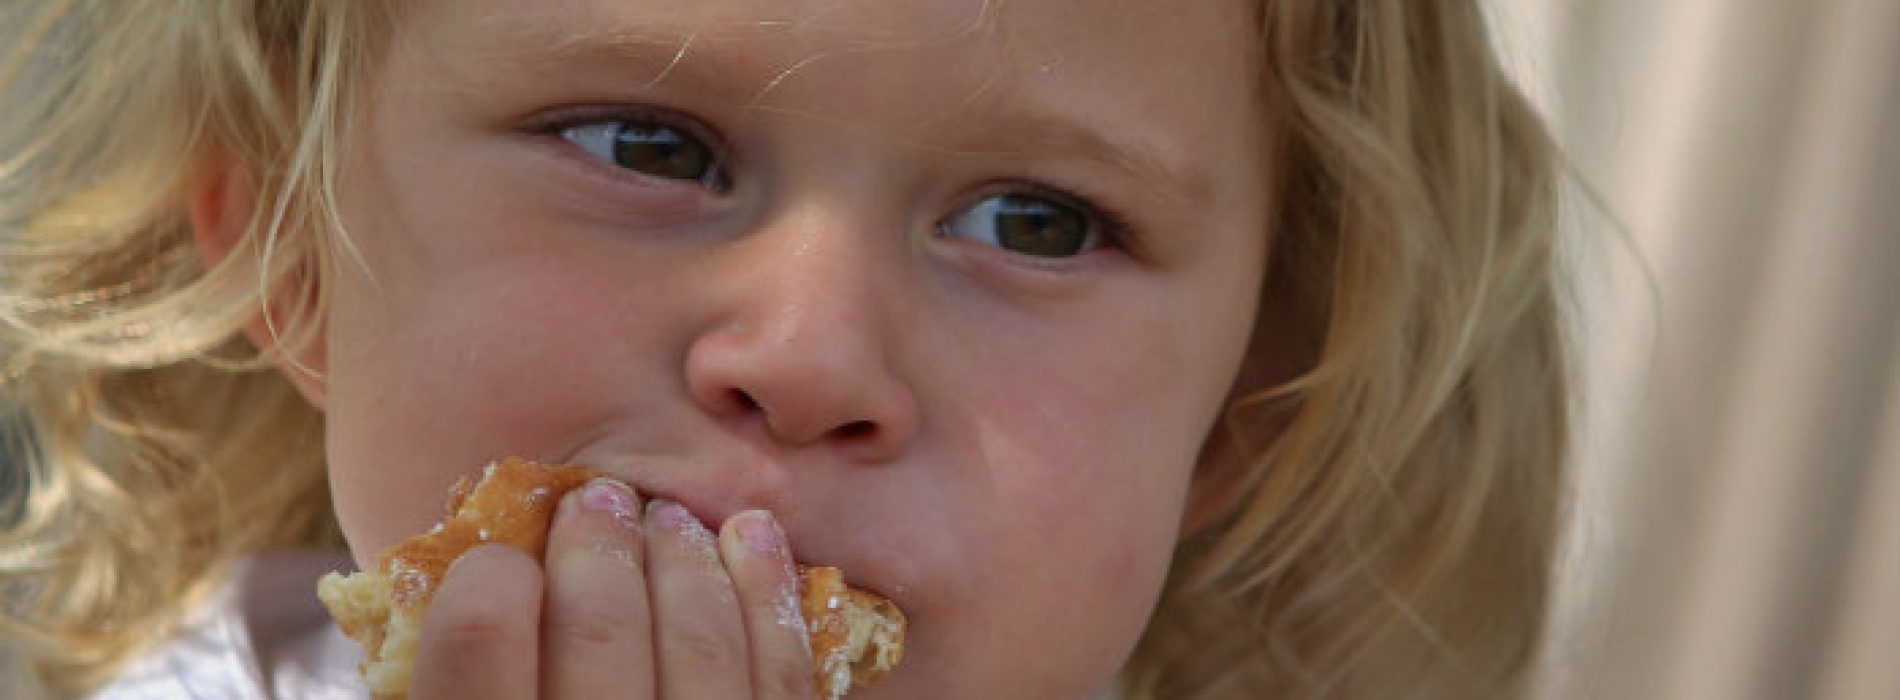 “Glutenvrij eten kan gevaarlijk zijn voor kinderen”